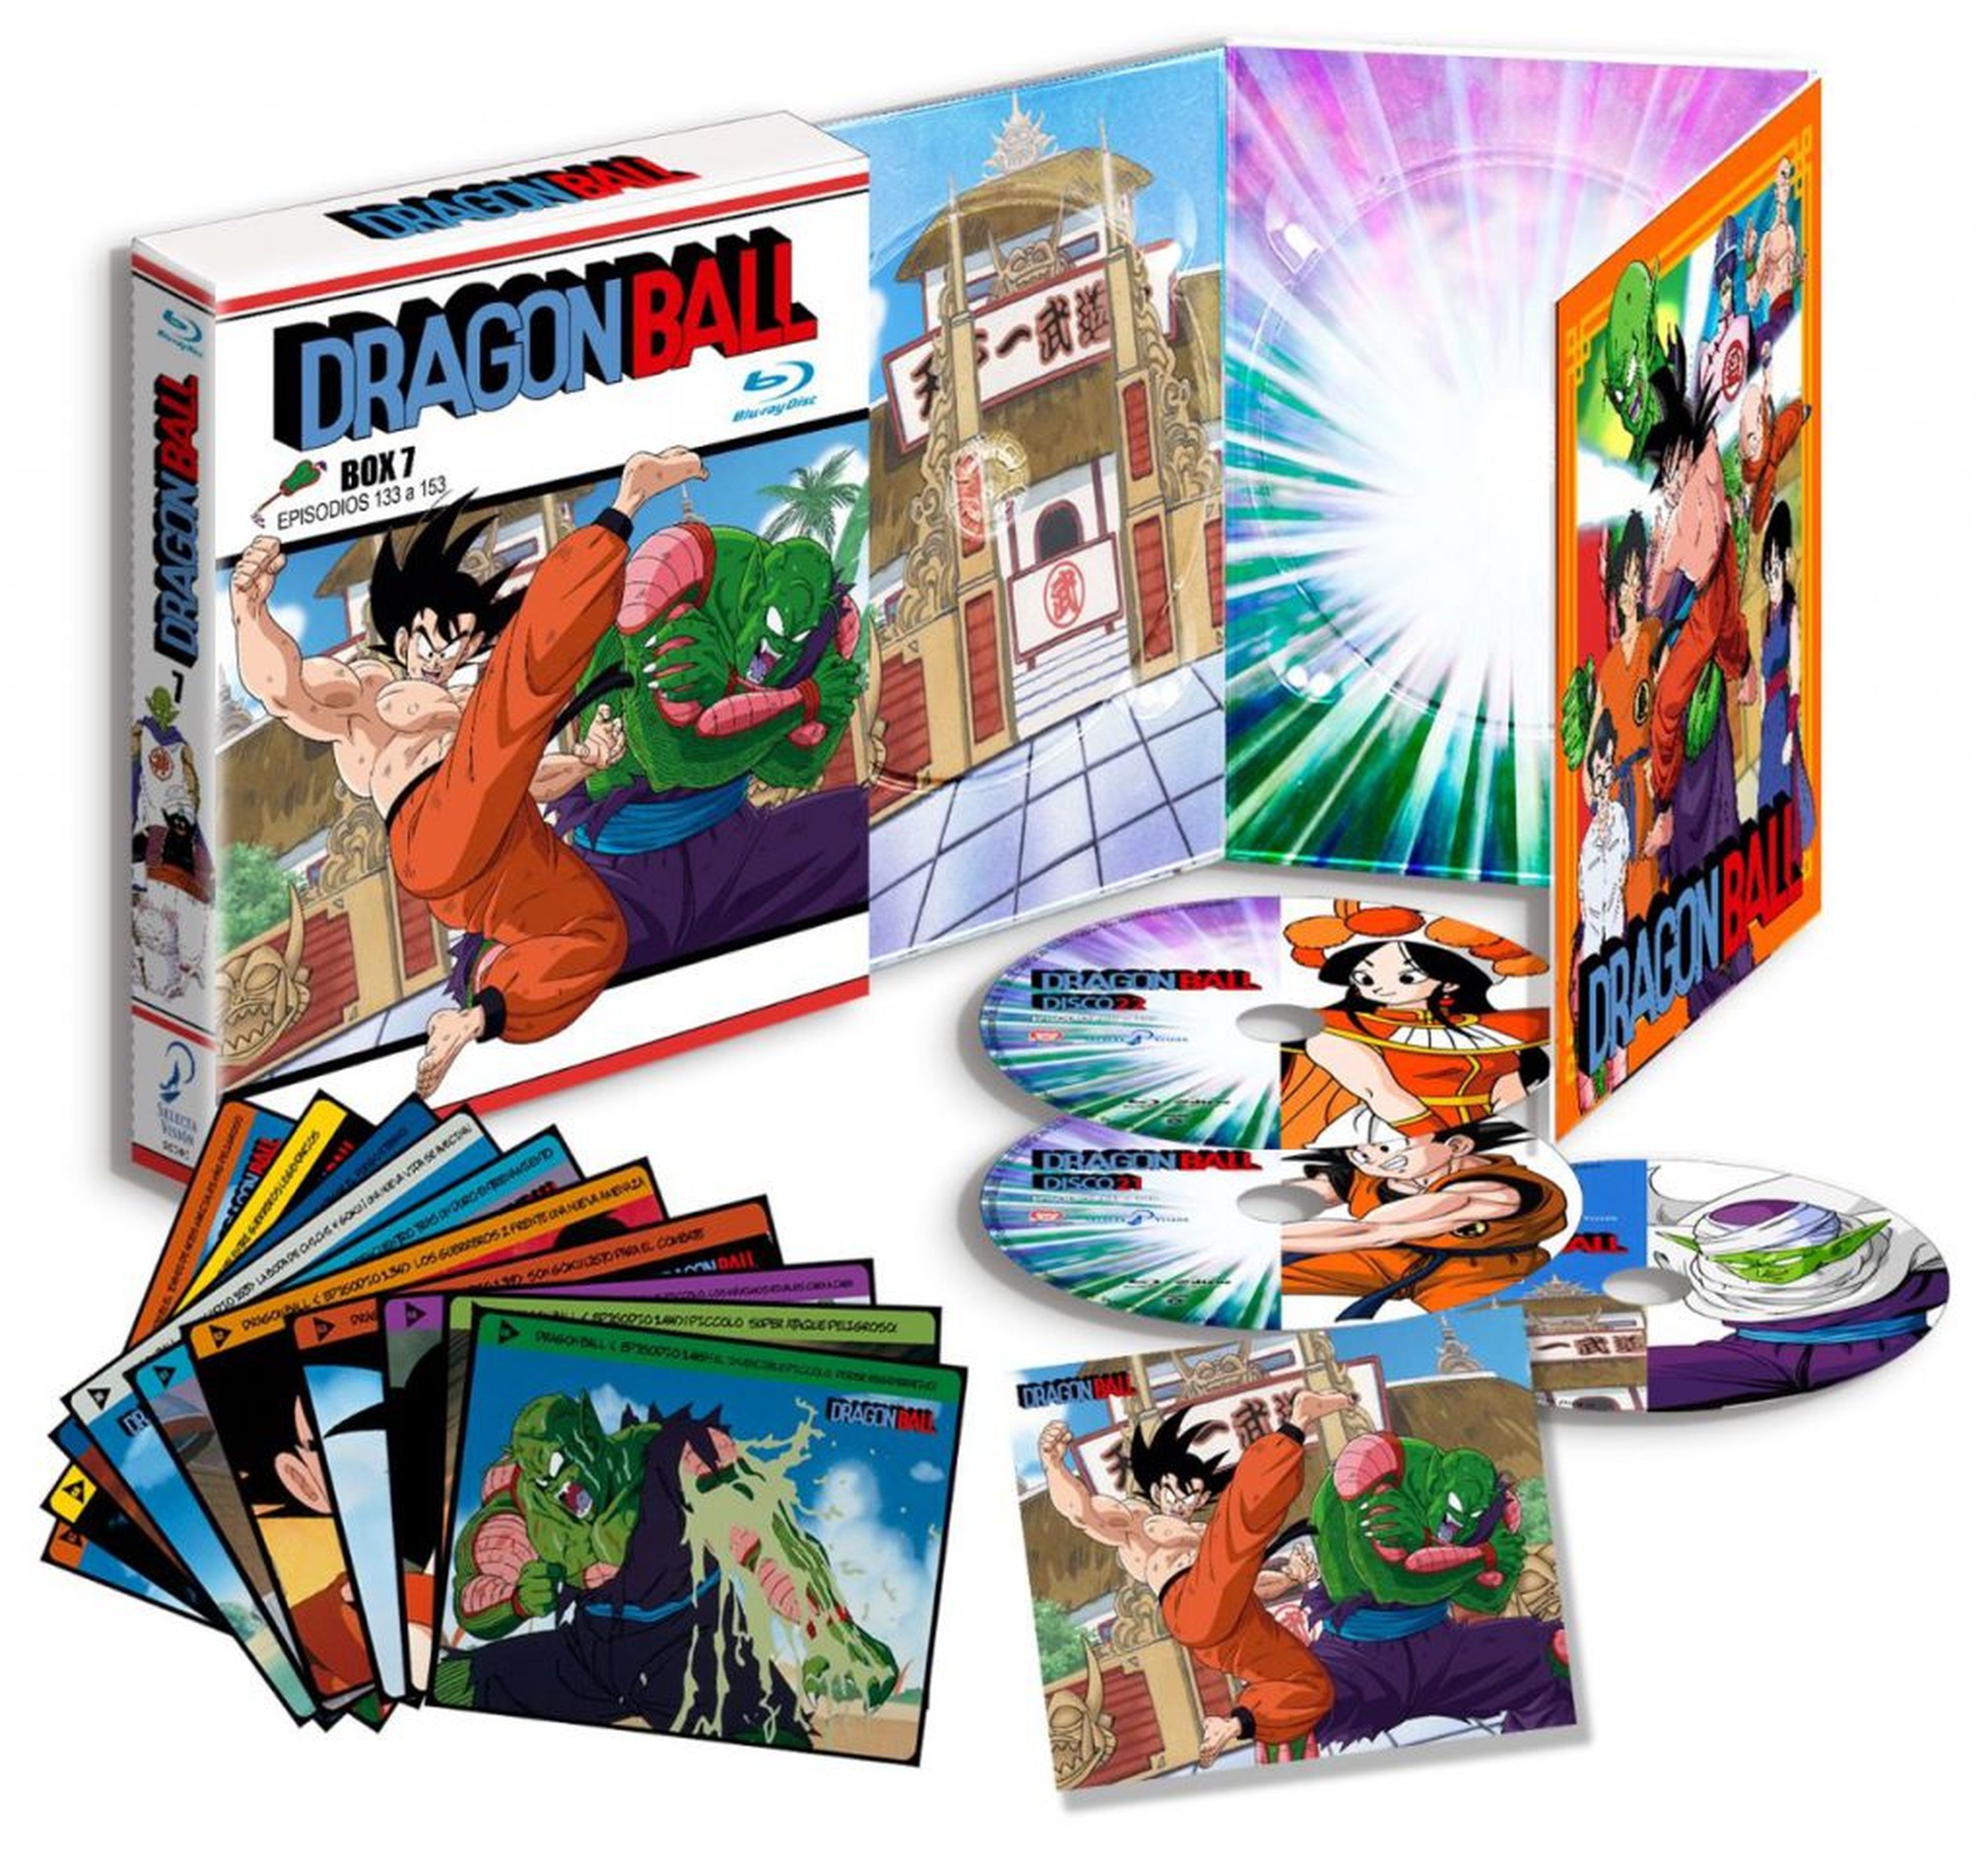 Dragon Ball en Blu-ray - Fecha de lanzamiento y portada del Box 7, el último de la serie